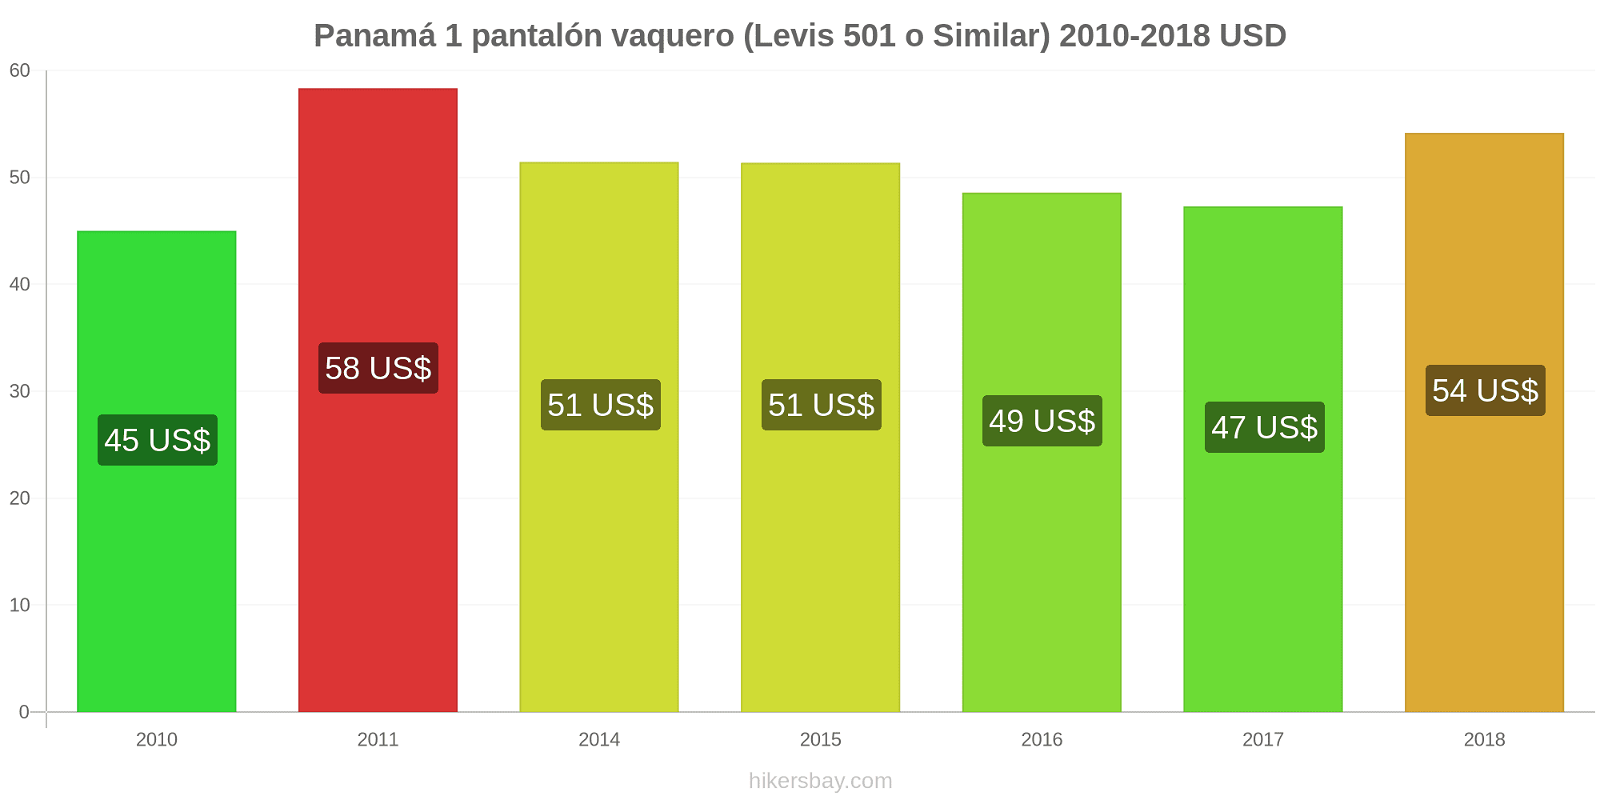 Panamá cambios de precios 1 par de jeans (Levis 501 o similares) hikersbay.com